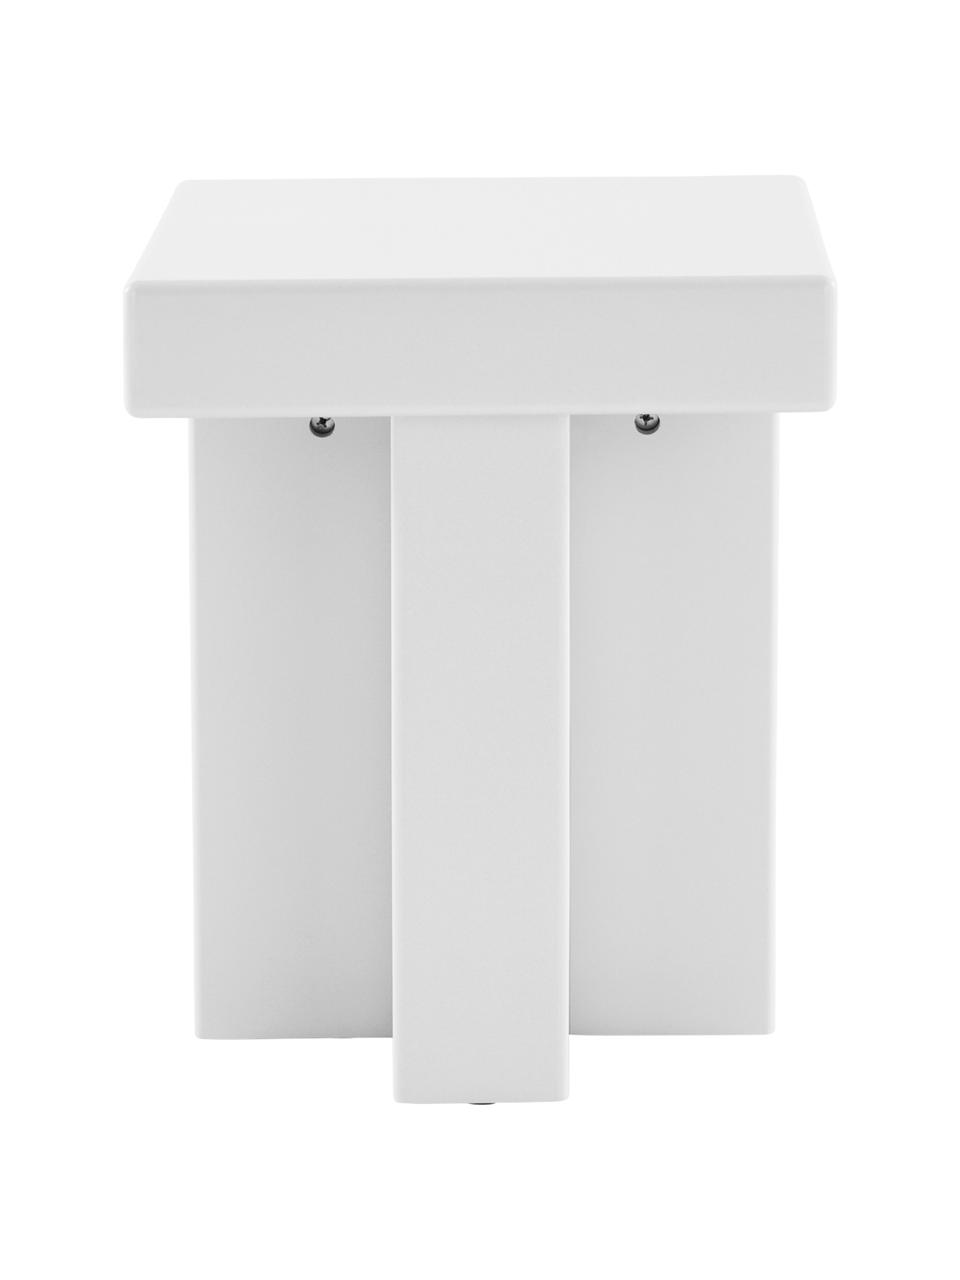 Odkládací stolek Crozz, Lakovaná MDF deska (dřevovláknitá deska střední hustoty), Dřevo, lakováno bílou barvou, Š 40 cm, V 58 cm